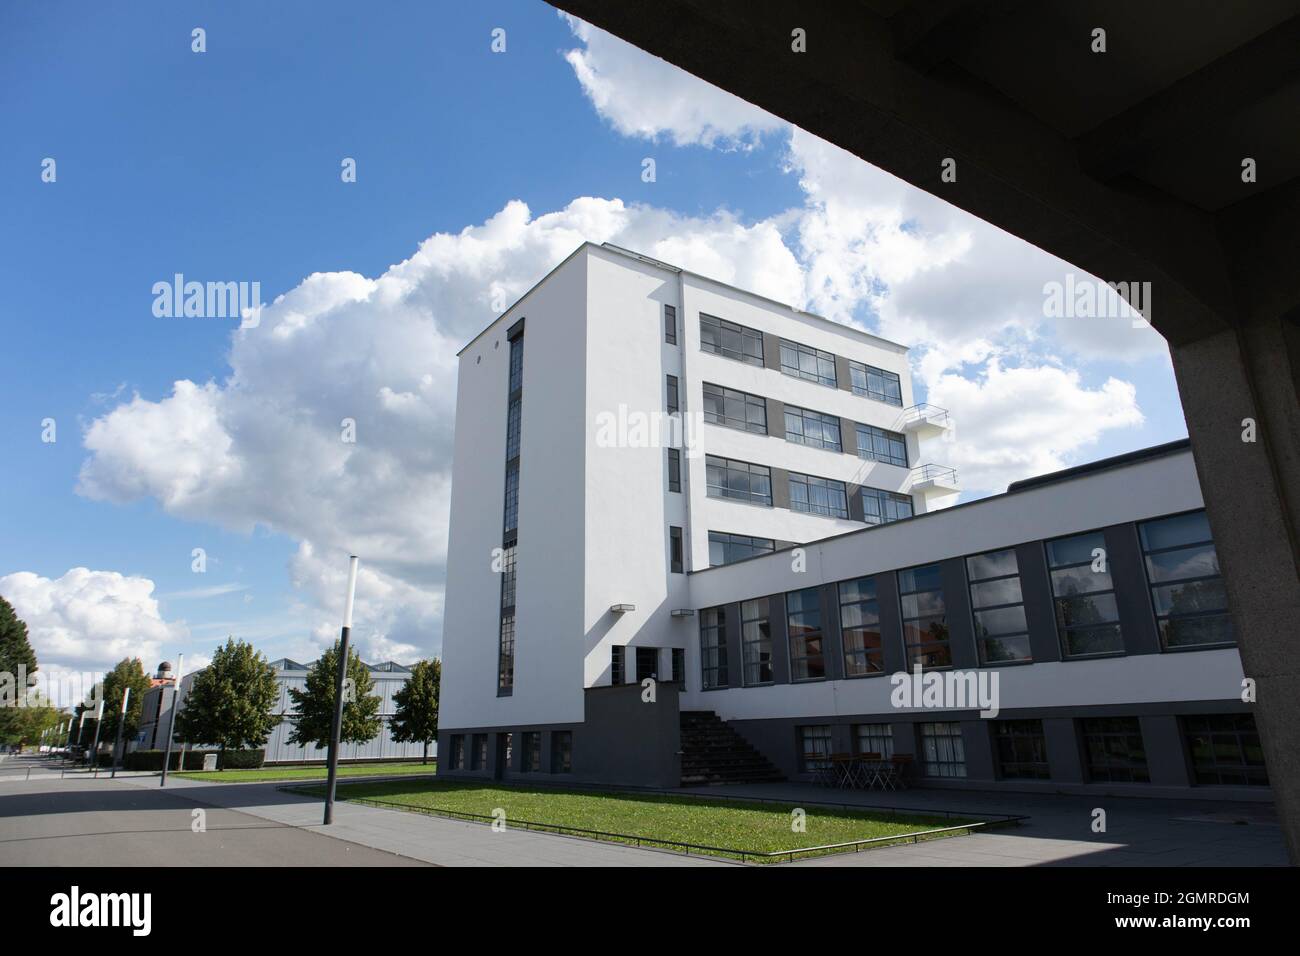 Bauhaus, Primera Escuela de Diseño Industrial. Dessau, Alemania.  Fotografías de alta calidad Fotografía de stock - Alamy